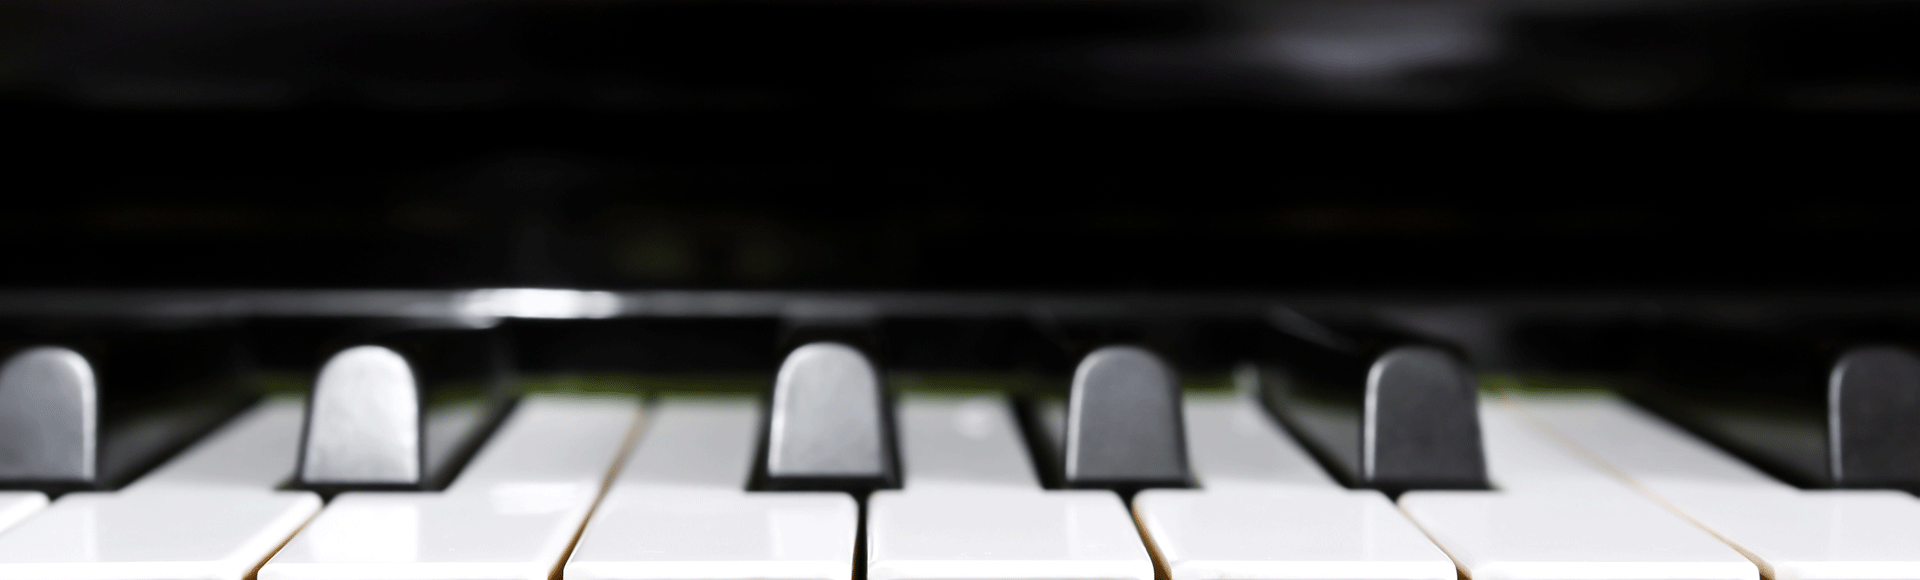 35 jahre piano kürten - große Rabatte auf Klaviere und Digitalpianos